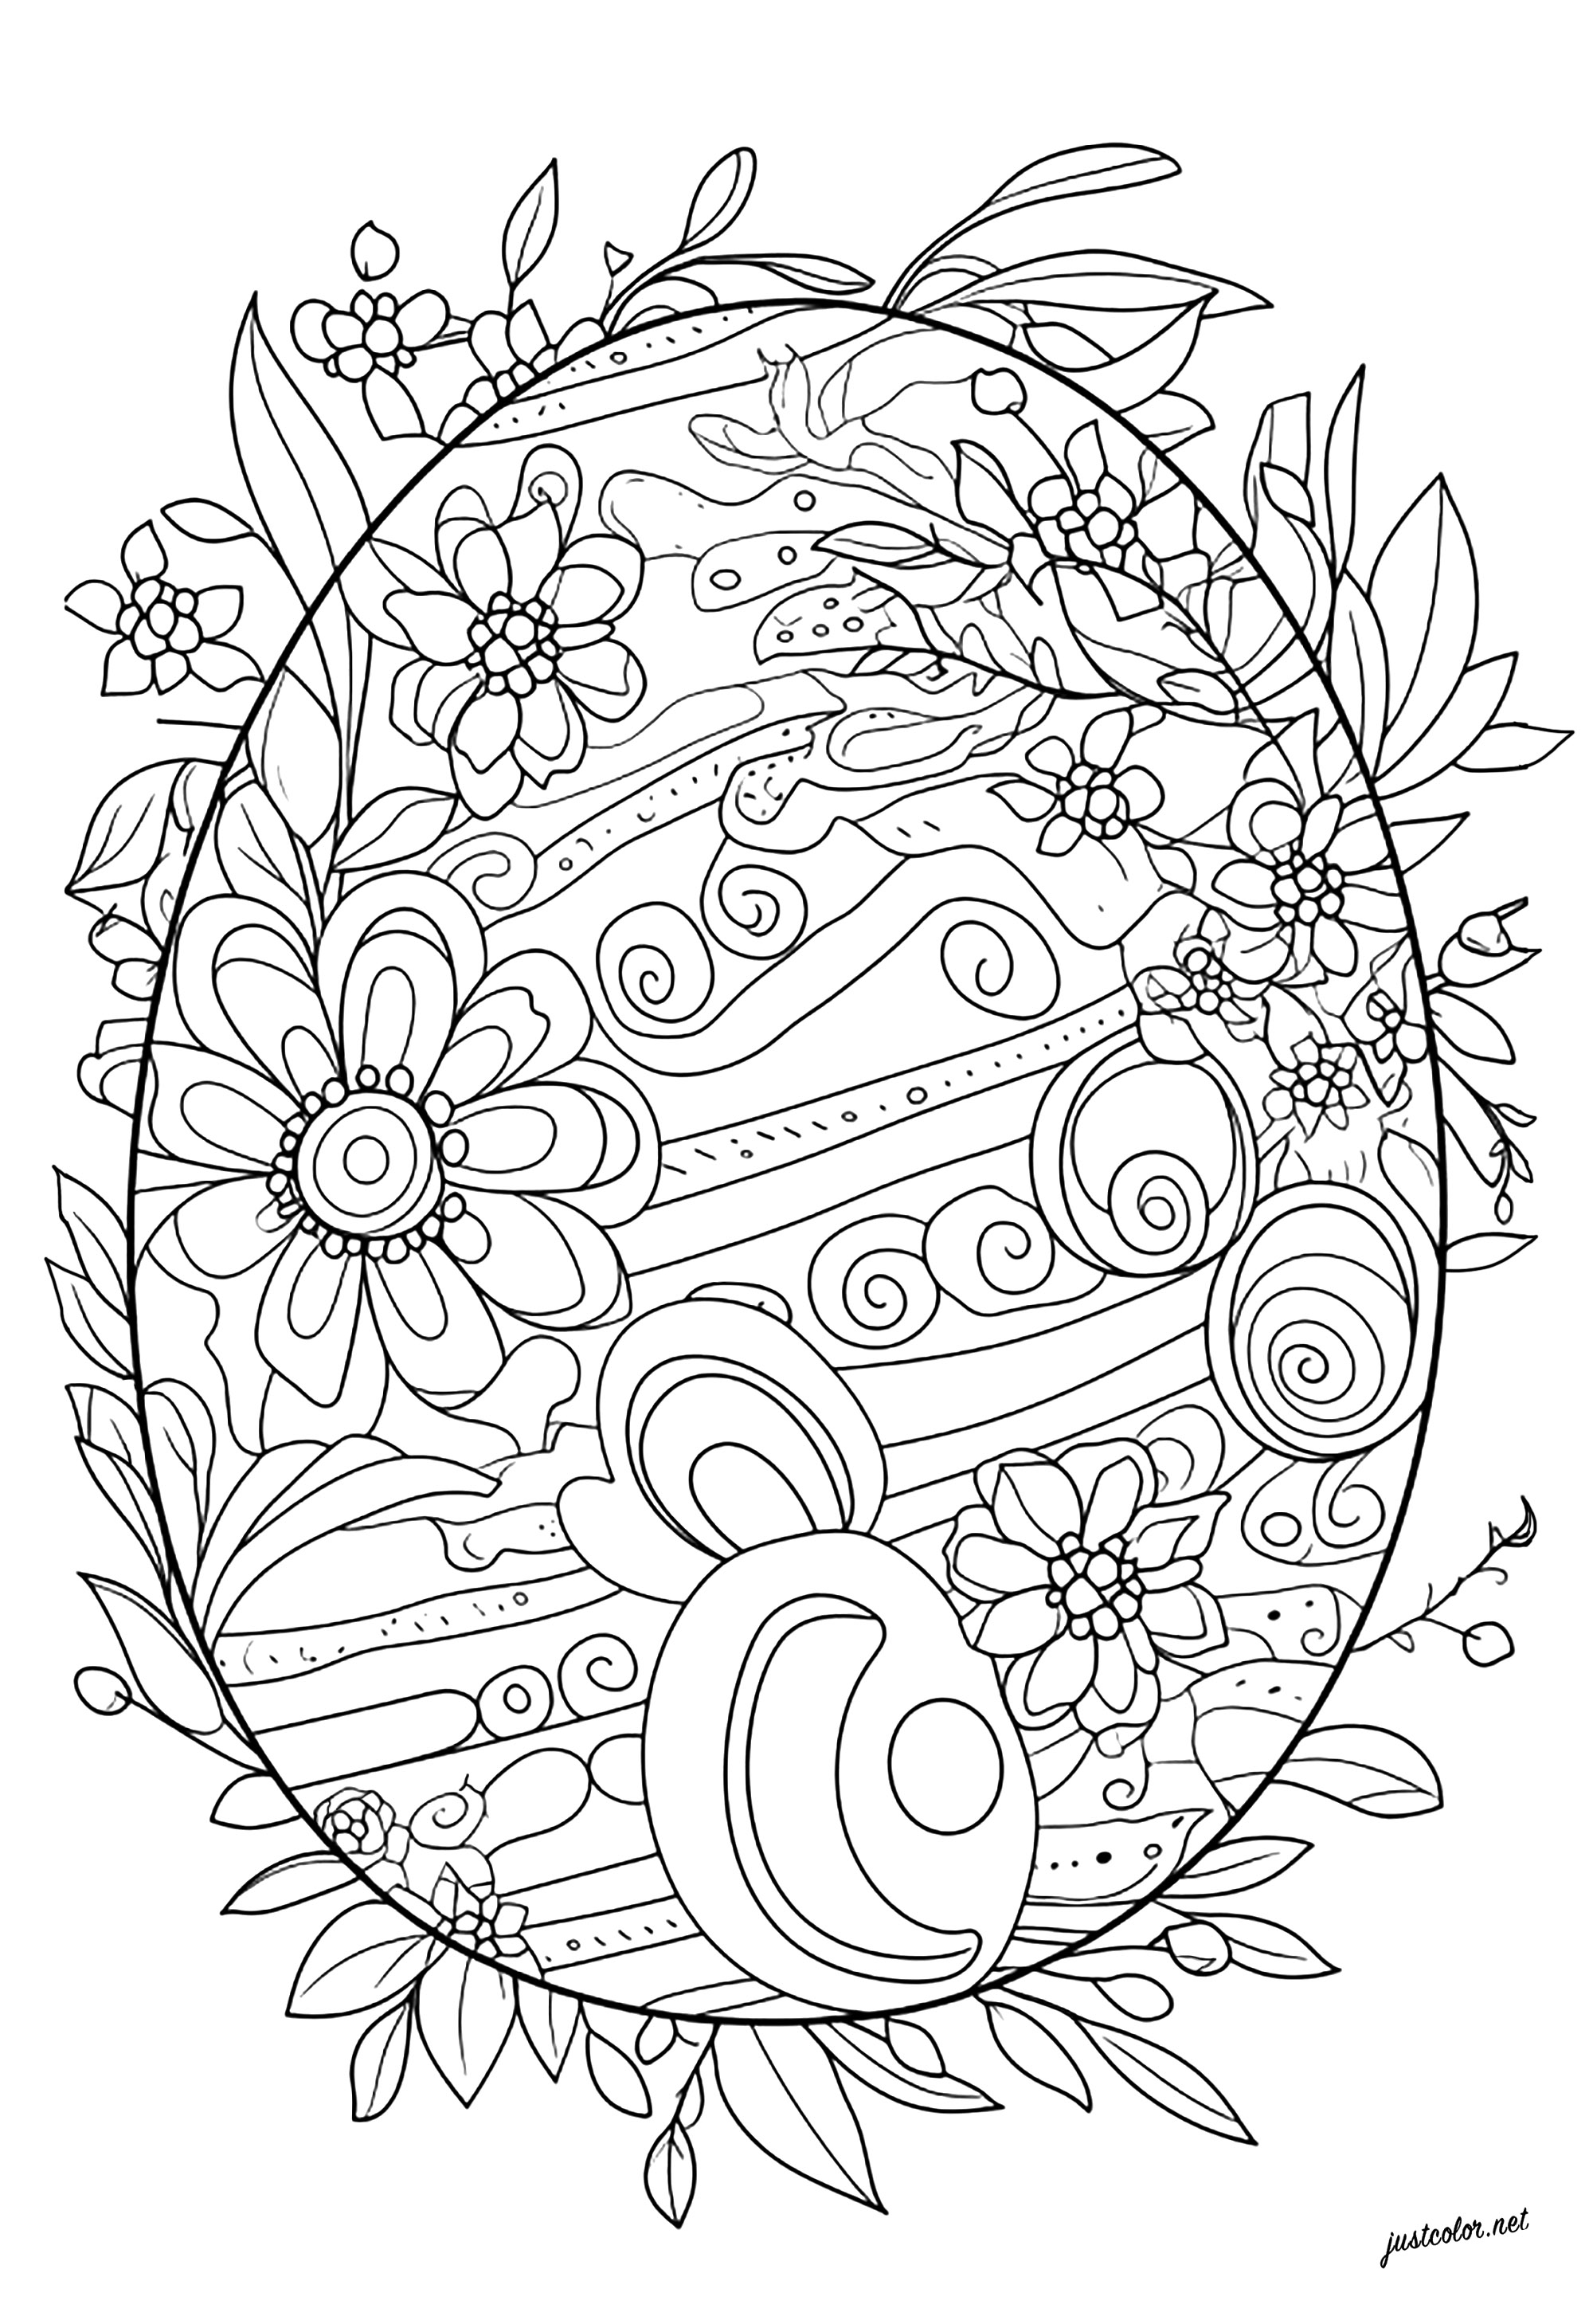 Original colorido de un huevo de Pascua. Colorea los motivos florales y abstractos de este huevo de Pascua